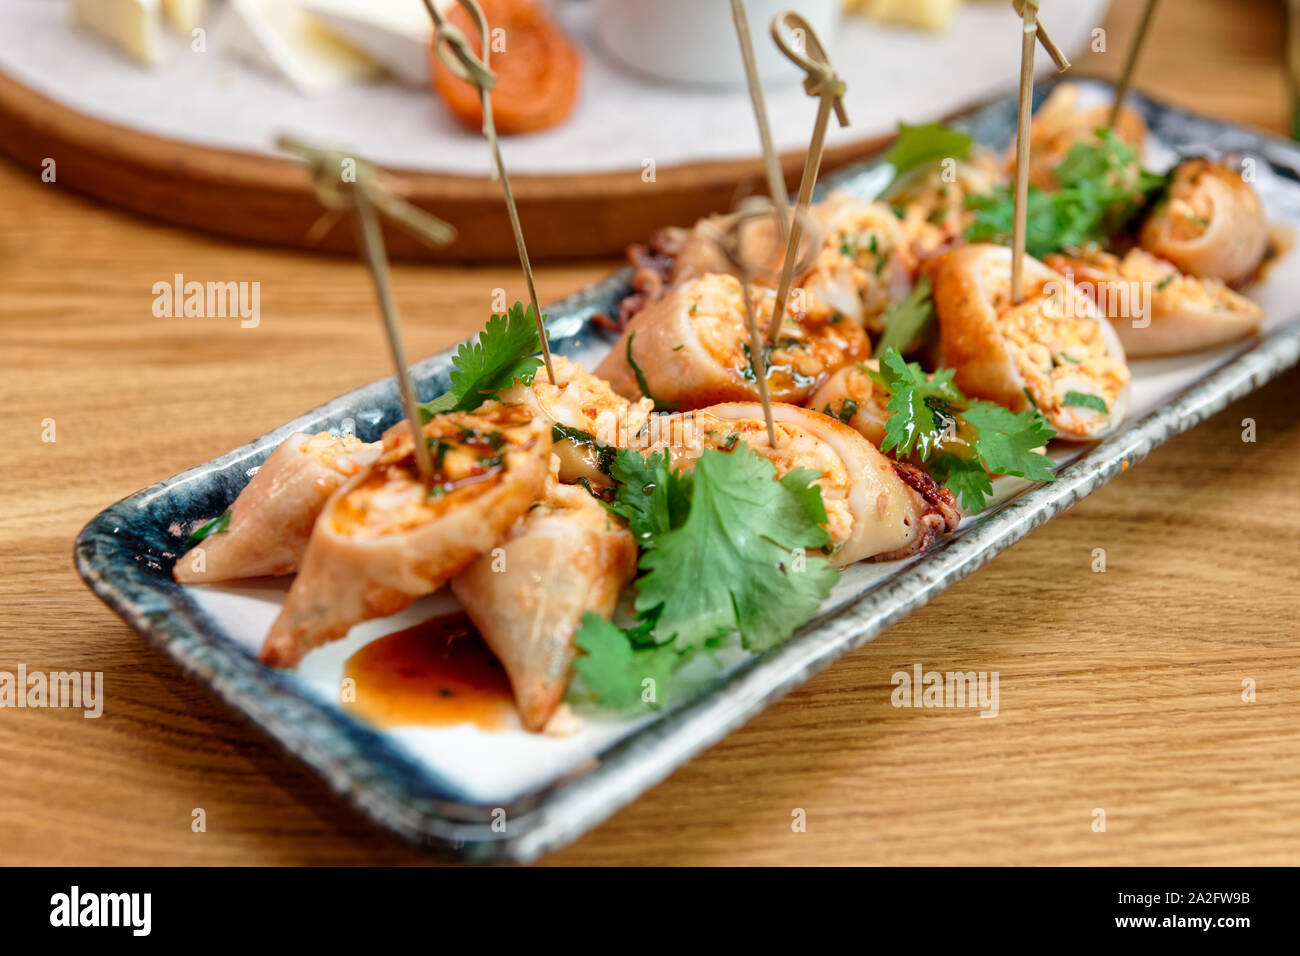 Encornets farcis cuits dans un style asiatique, close-up Banque D'Images